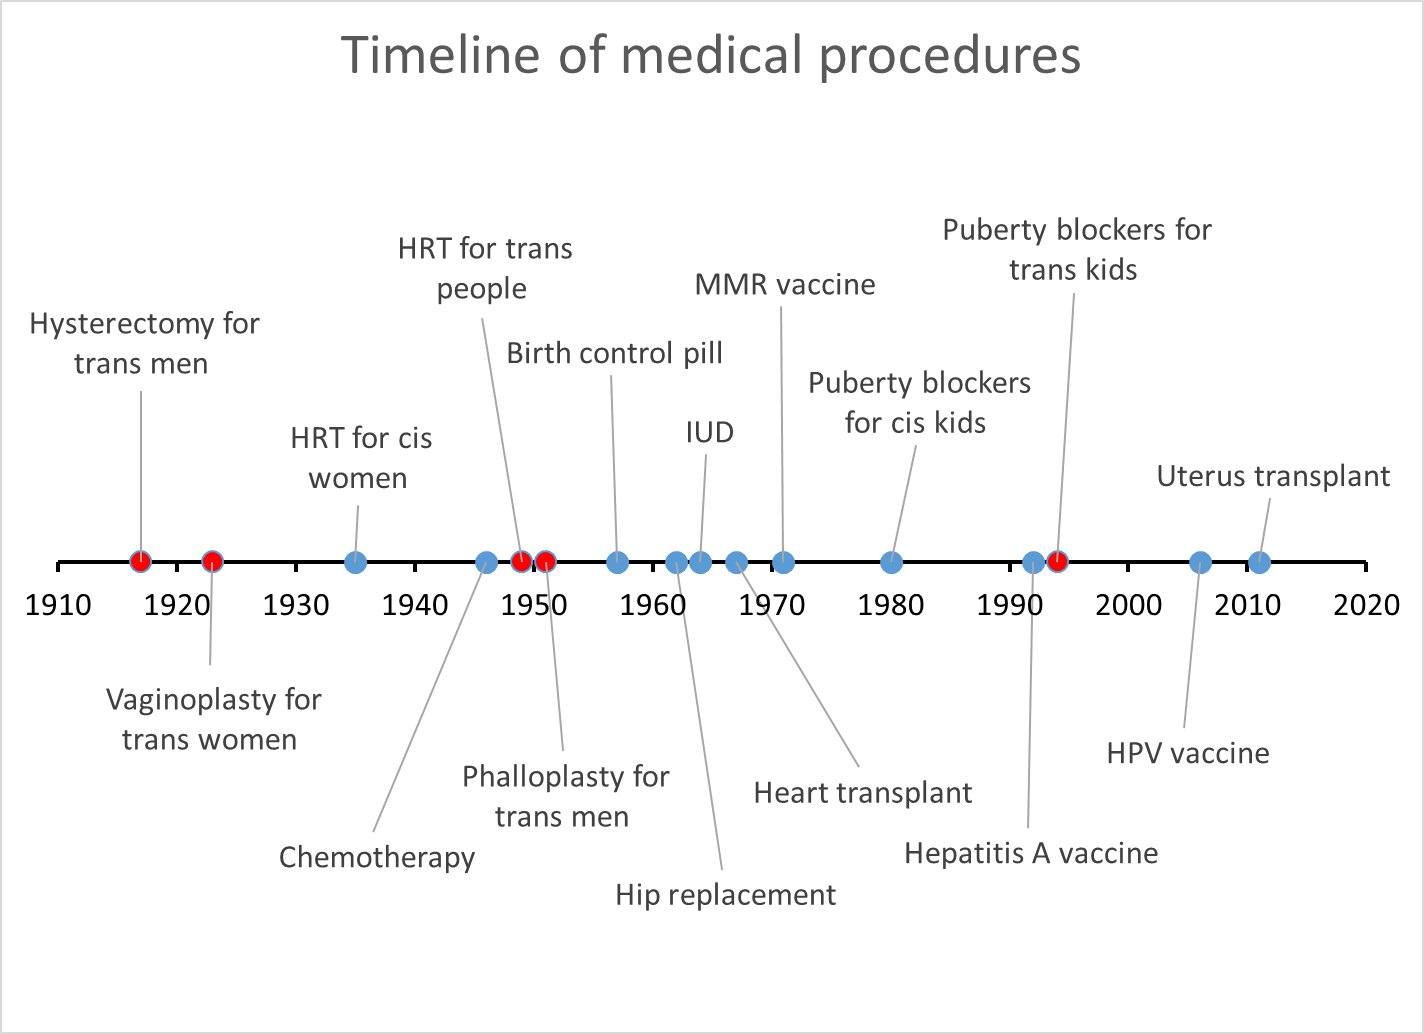 a timeline of medical procedures